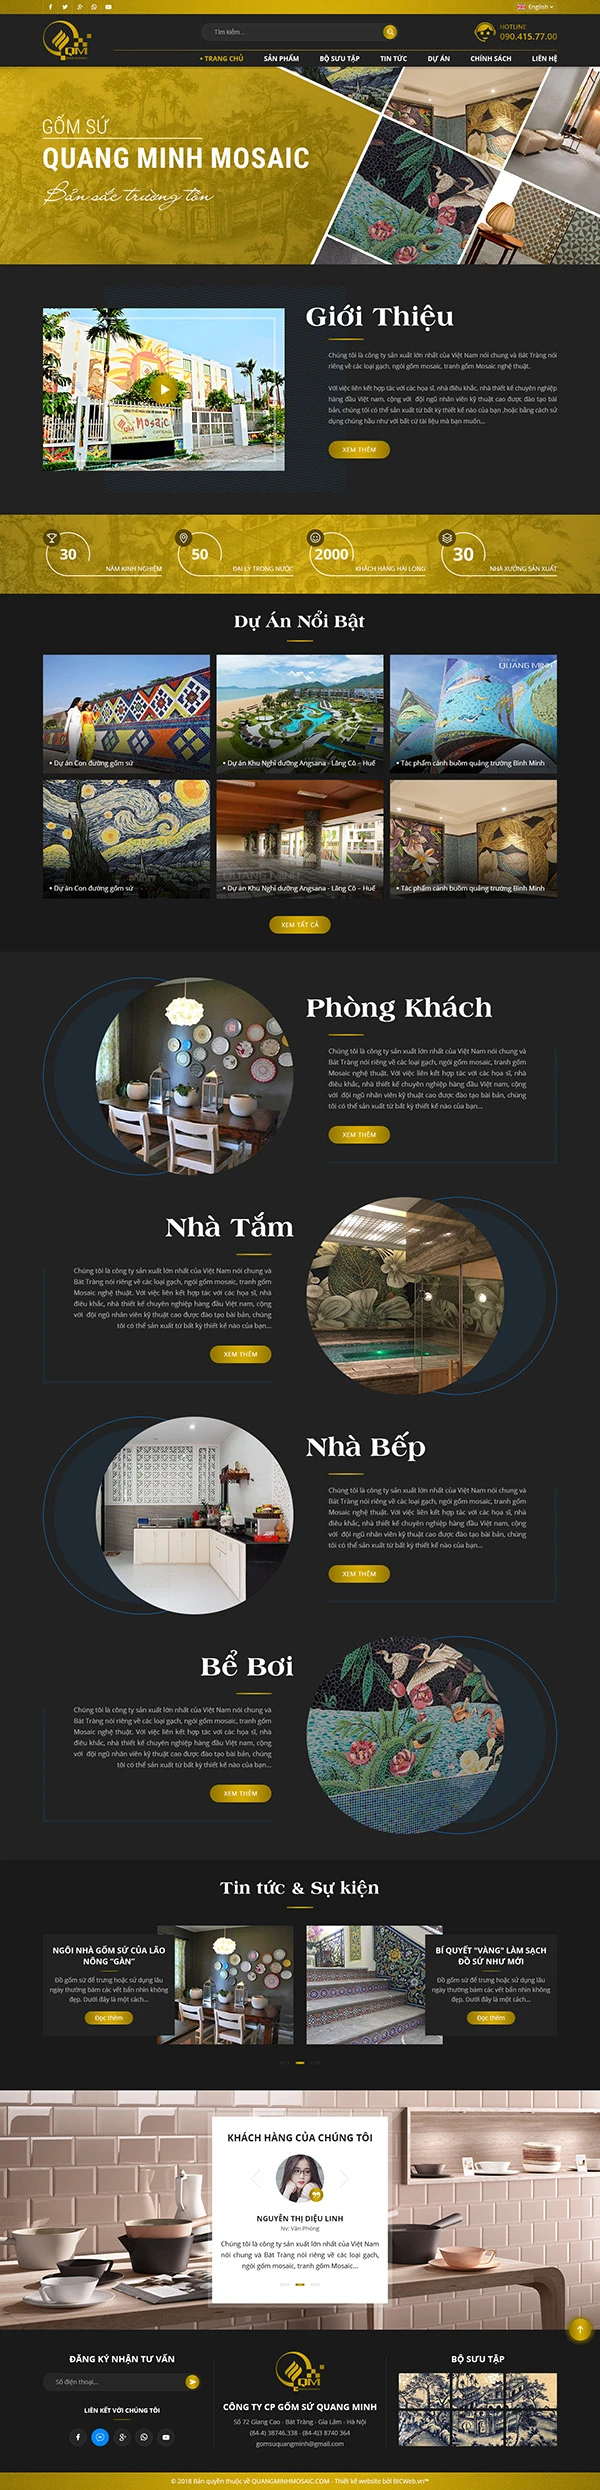 Công ty cổ phần gốm sứ Quang Minh